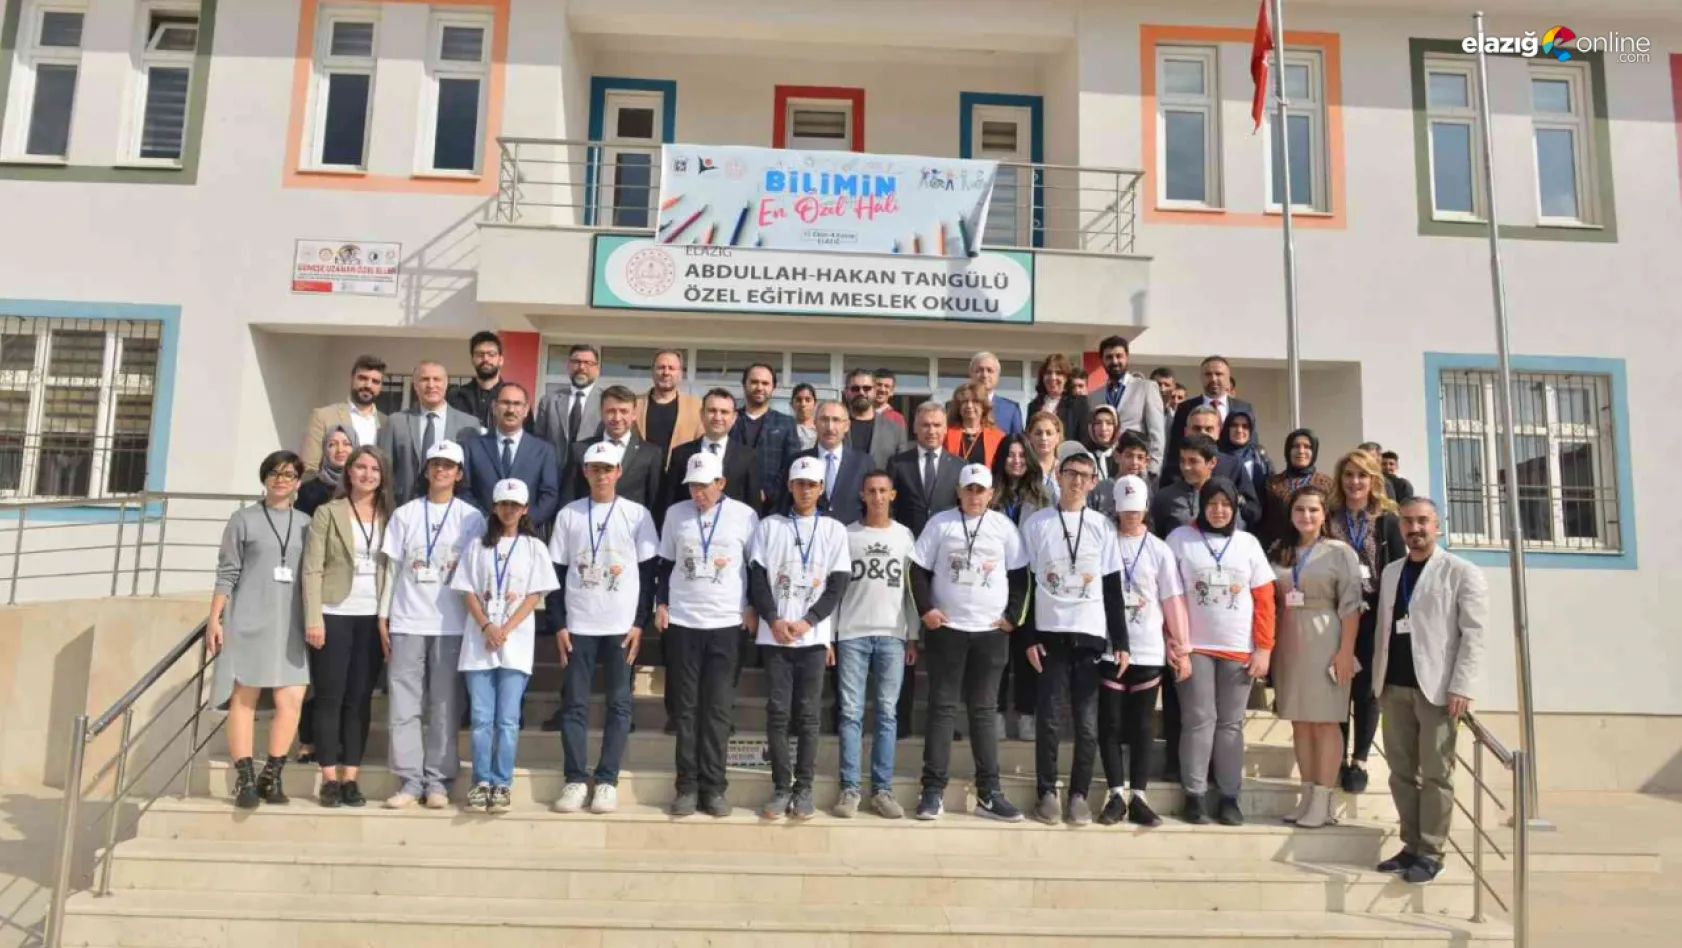 Elazığ'da 'Bilimin En Özel Hali' projesi hayata geçirildi